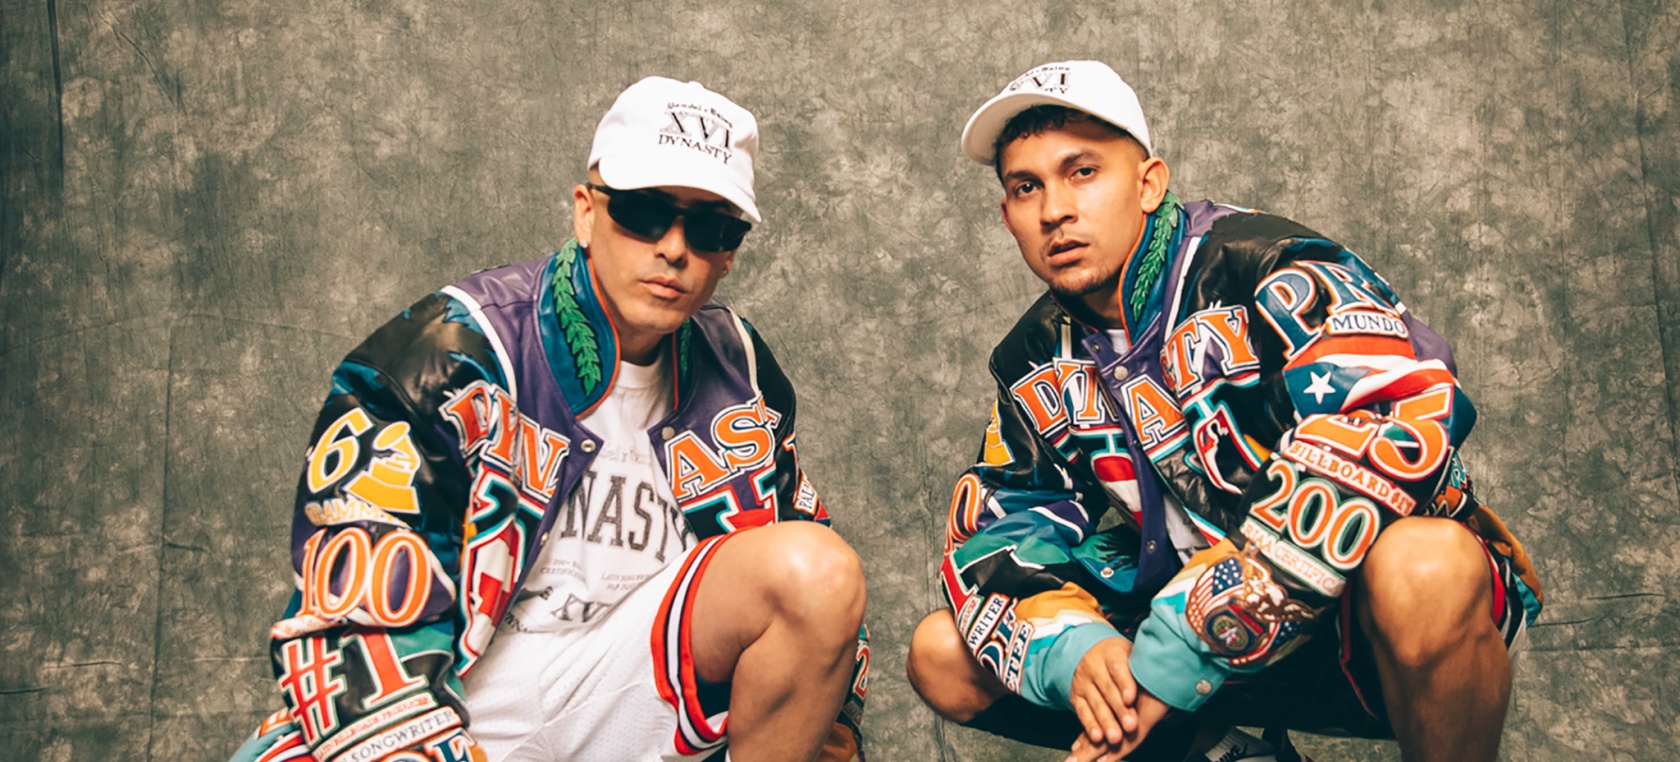 Tainy y Yandel nos traen los inicios del reggaeton en ‘Deja Vu’ y hacen historia